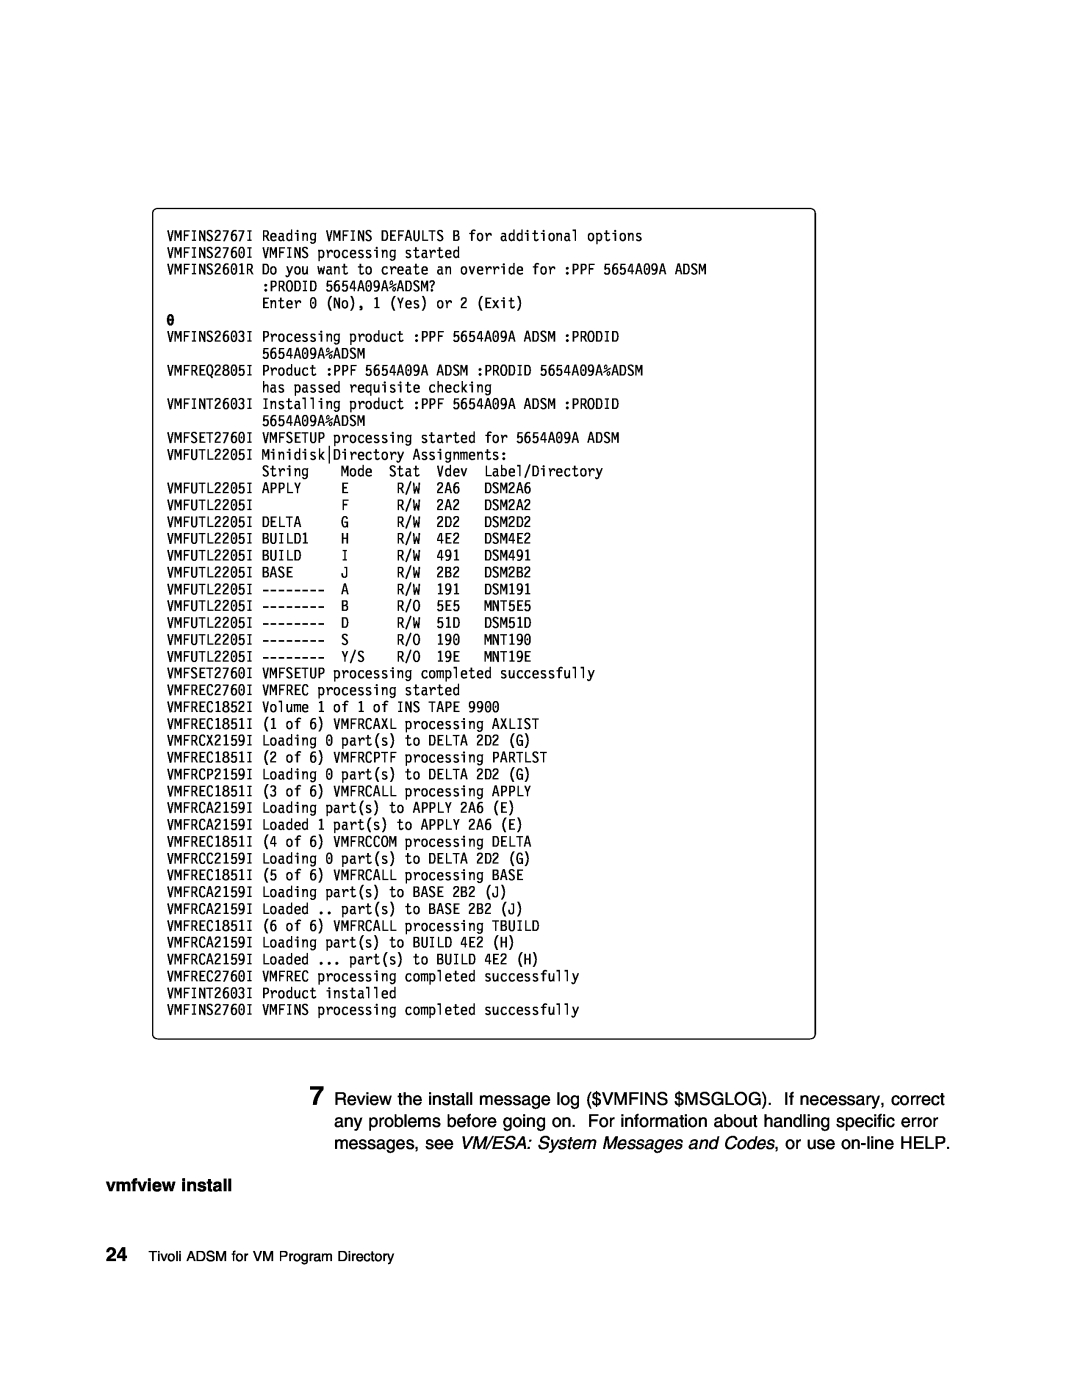 IBM 5697-VM3 manual vmfview install, Tivoli ADSM for VM Program Directory, VMFUTL22 BASE, DSM191, MNT5E5, DSM51D, MNT19E 